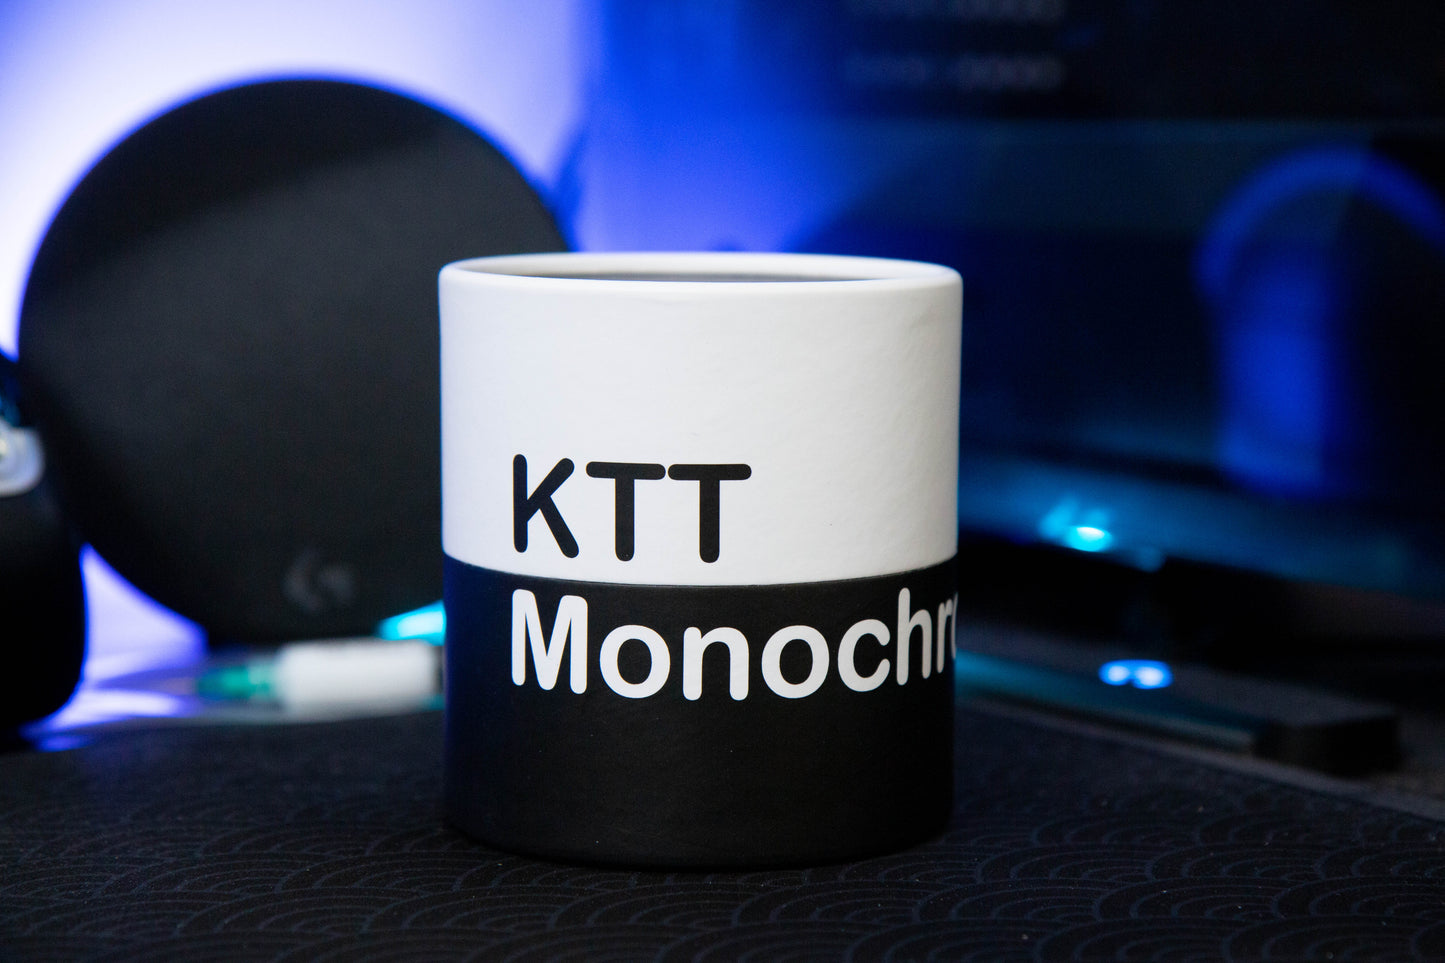 KTT Monochrome - Onyx